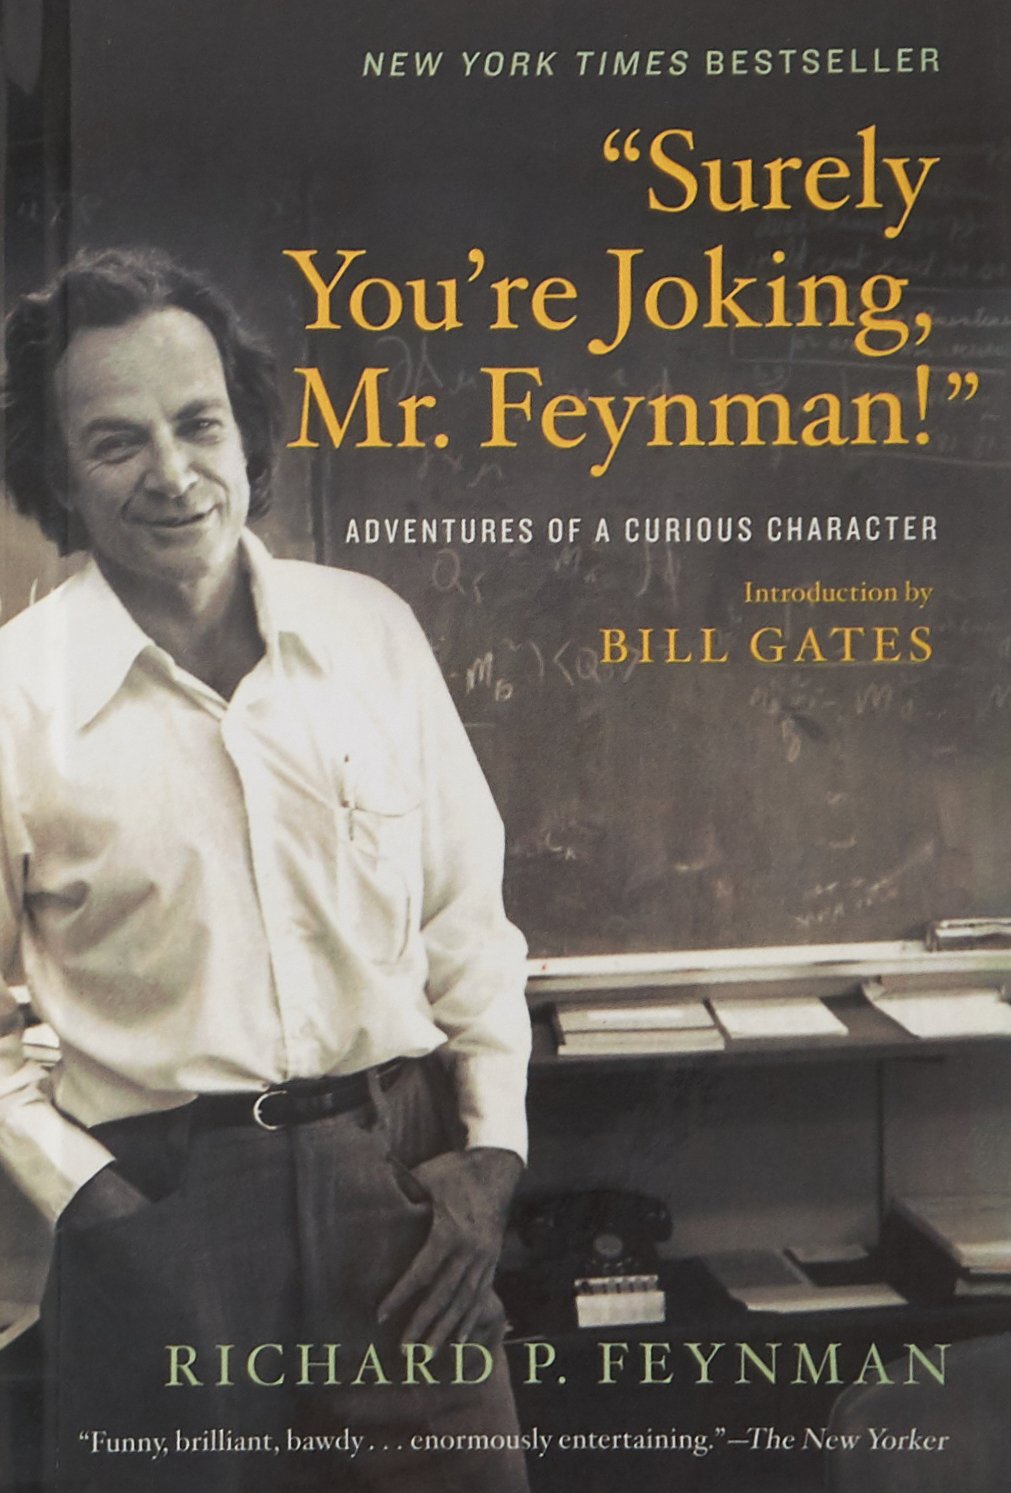 Book image of Surely you're joking, Mr. Feynman image